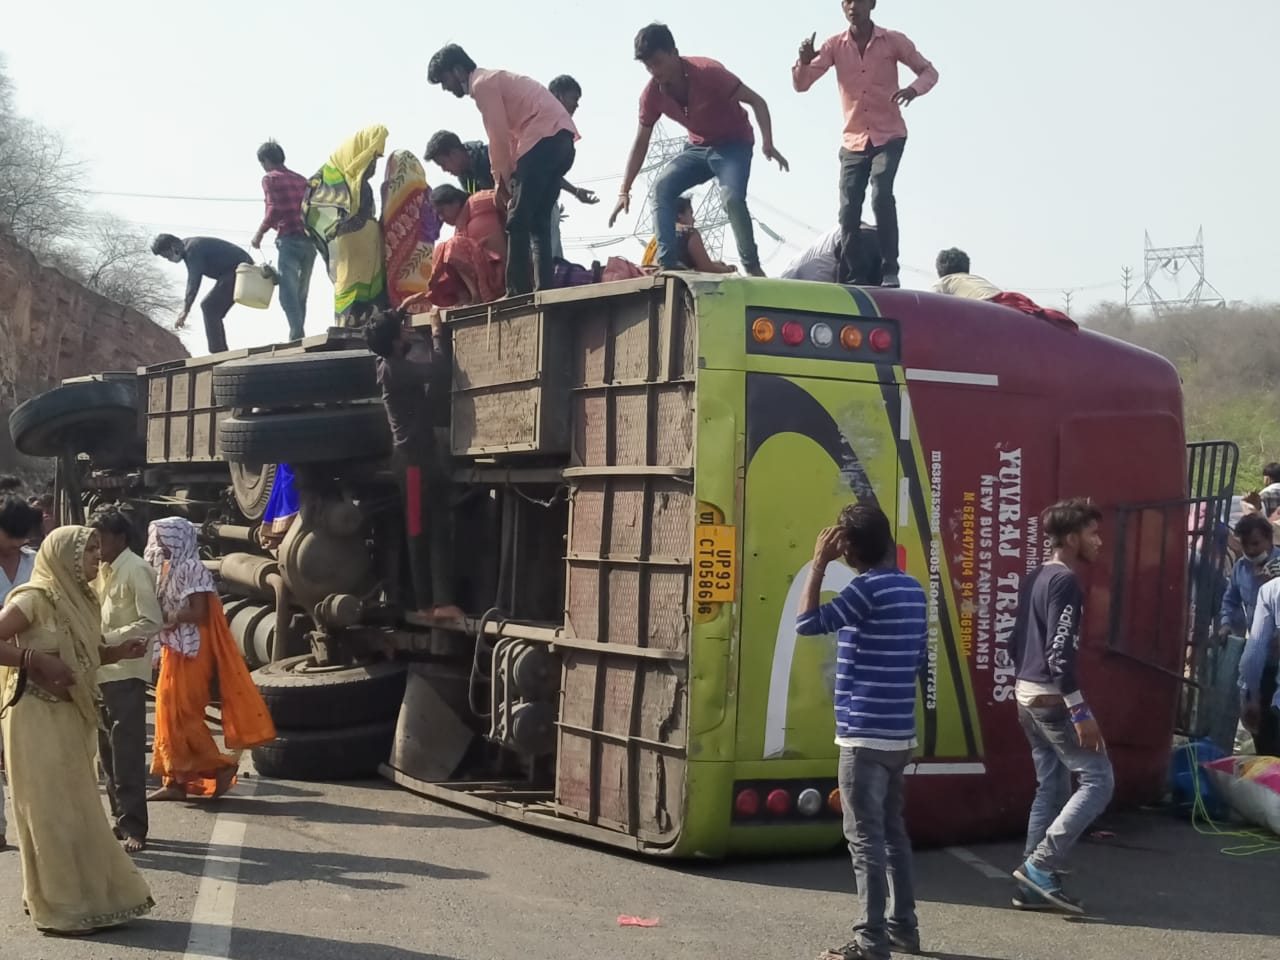 दिल्ली से छतरपुर के लिए जा रही मजदूरों से भरी बस पलटी, 3 की मौत, 24 मजदूर घायल | New India Times